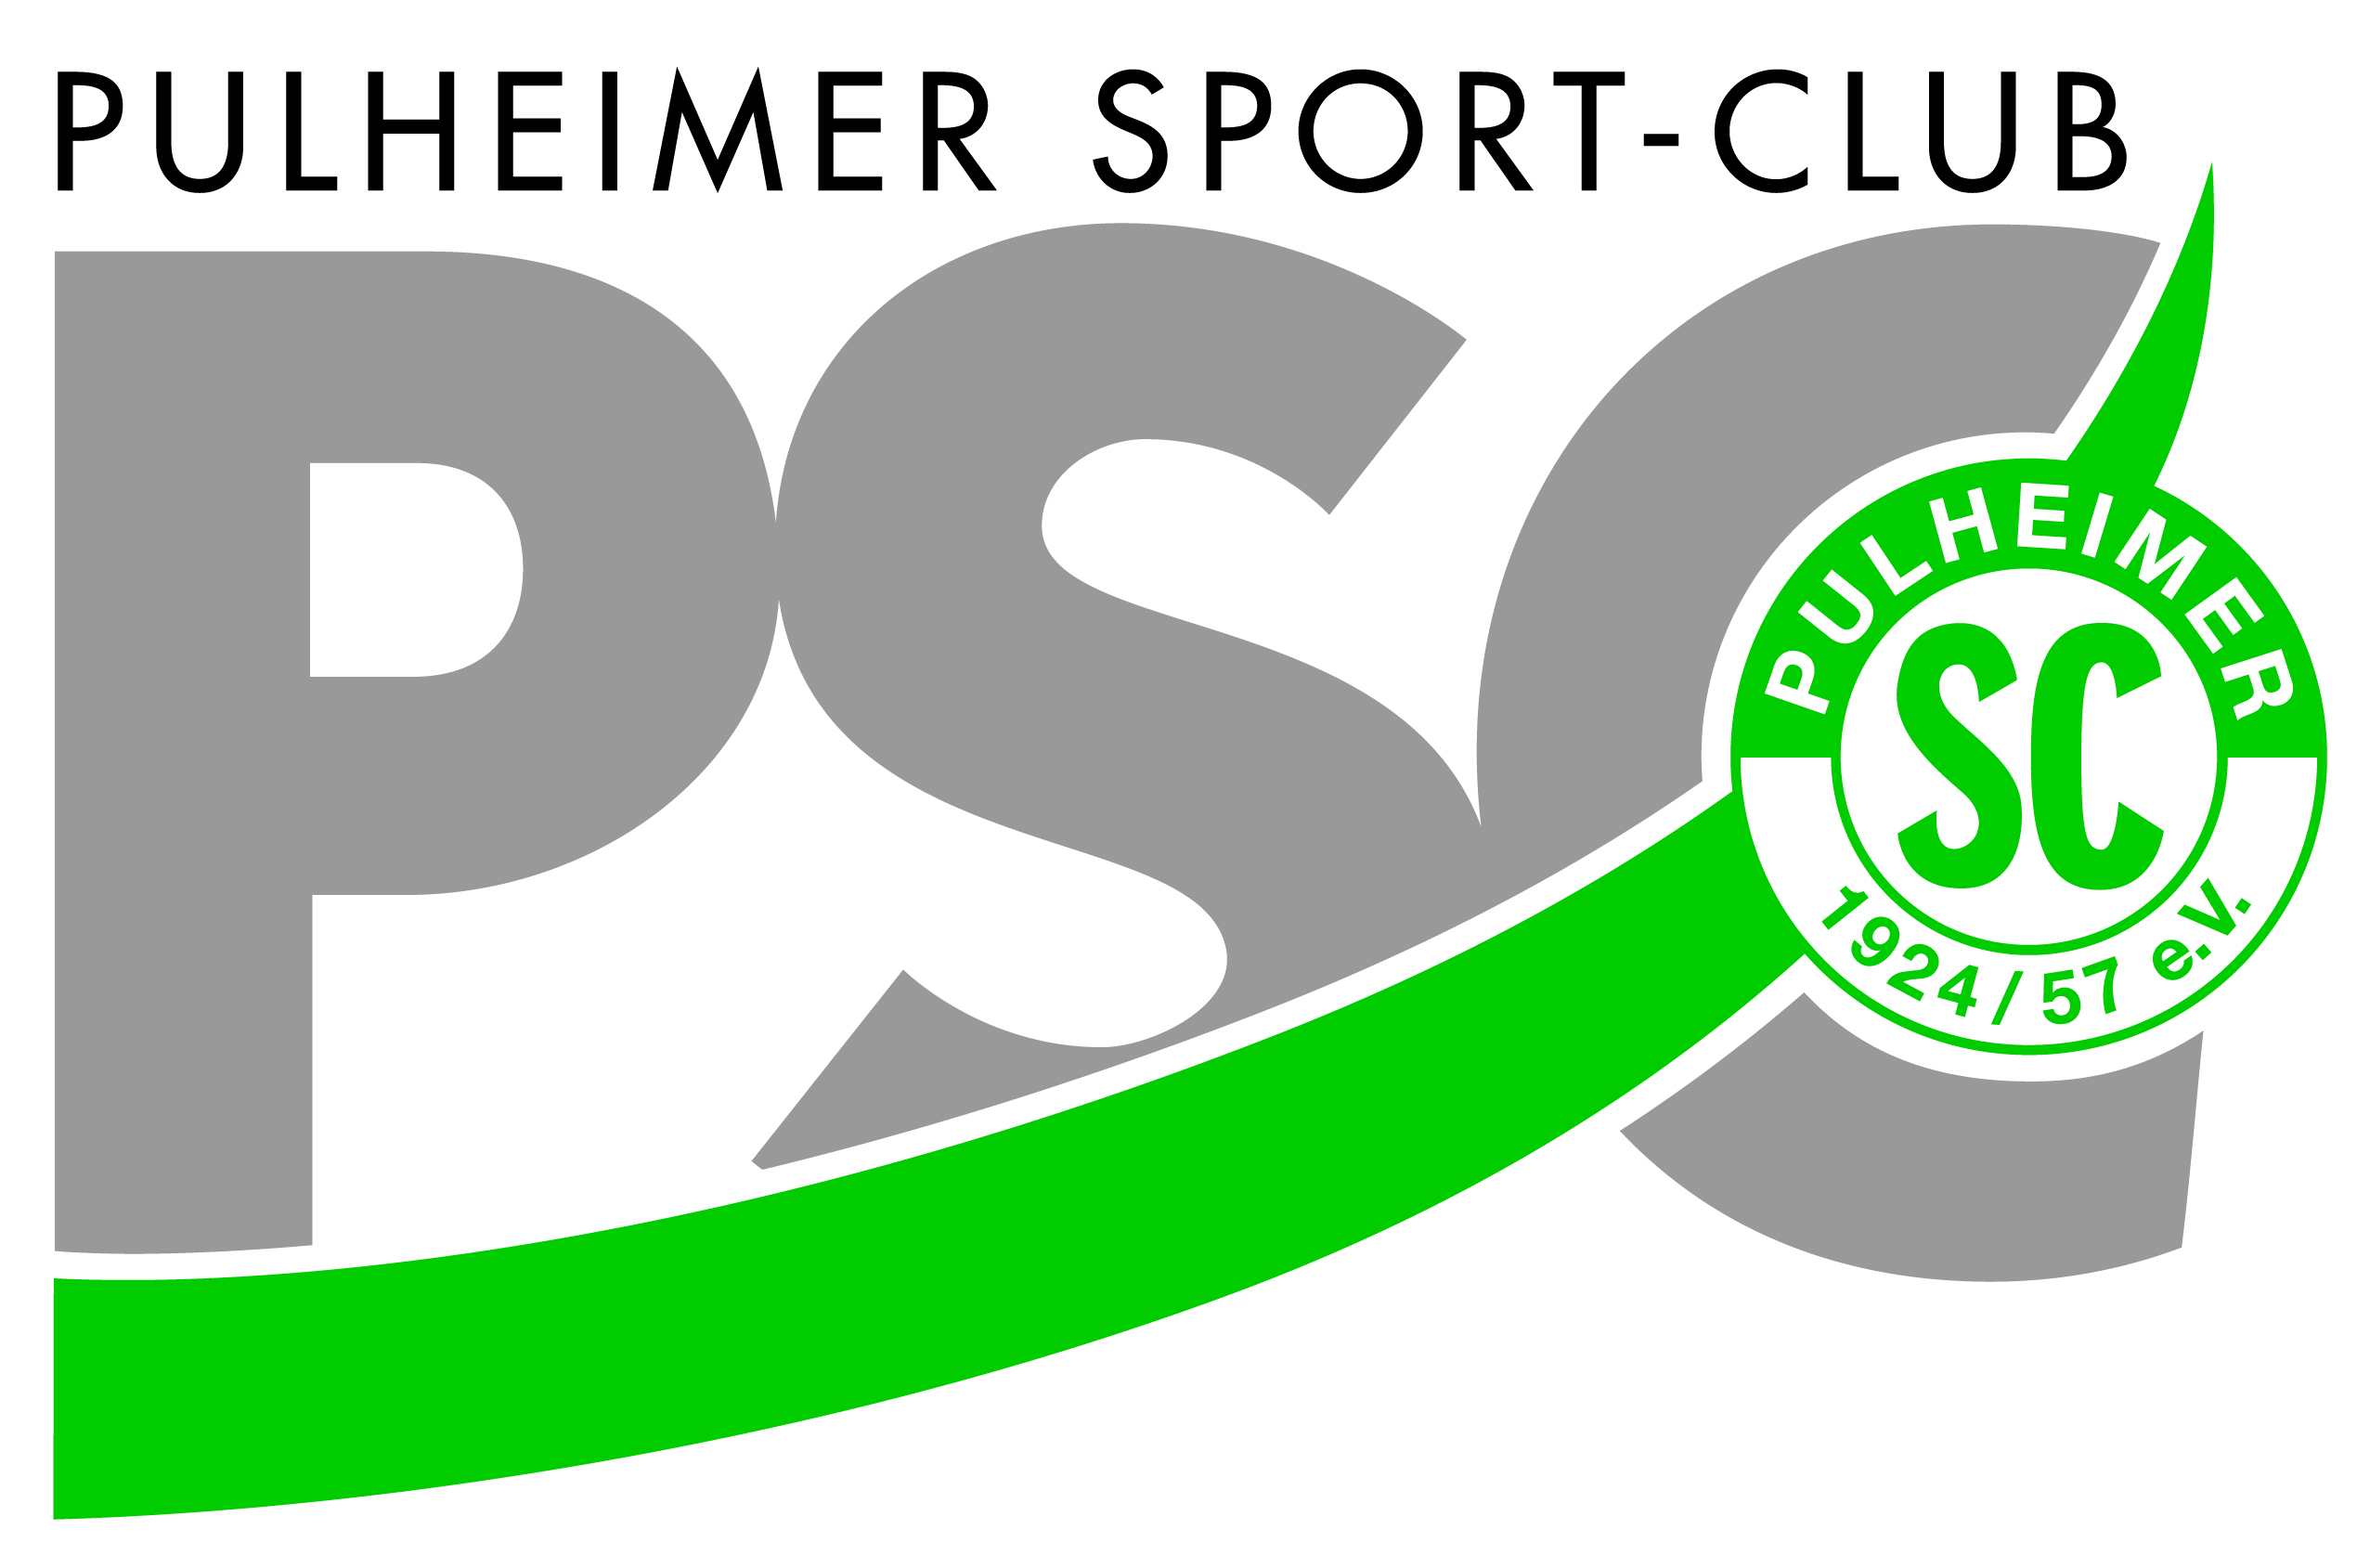 Der Pulheimer Sport Club ist im ganzen Rhein-Erft-Kreis ein Begriff.